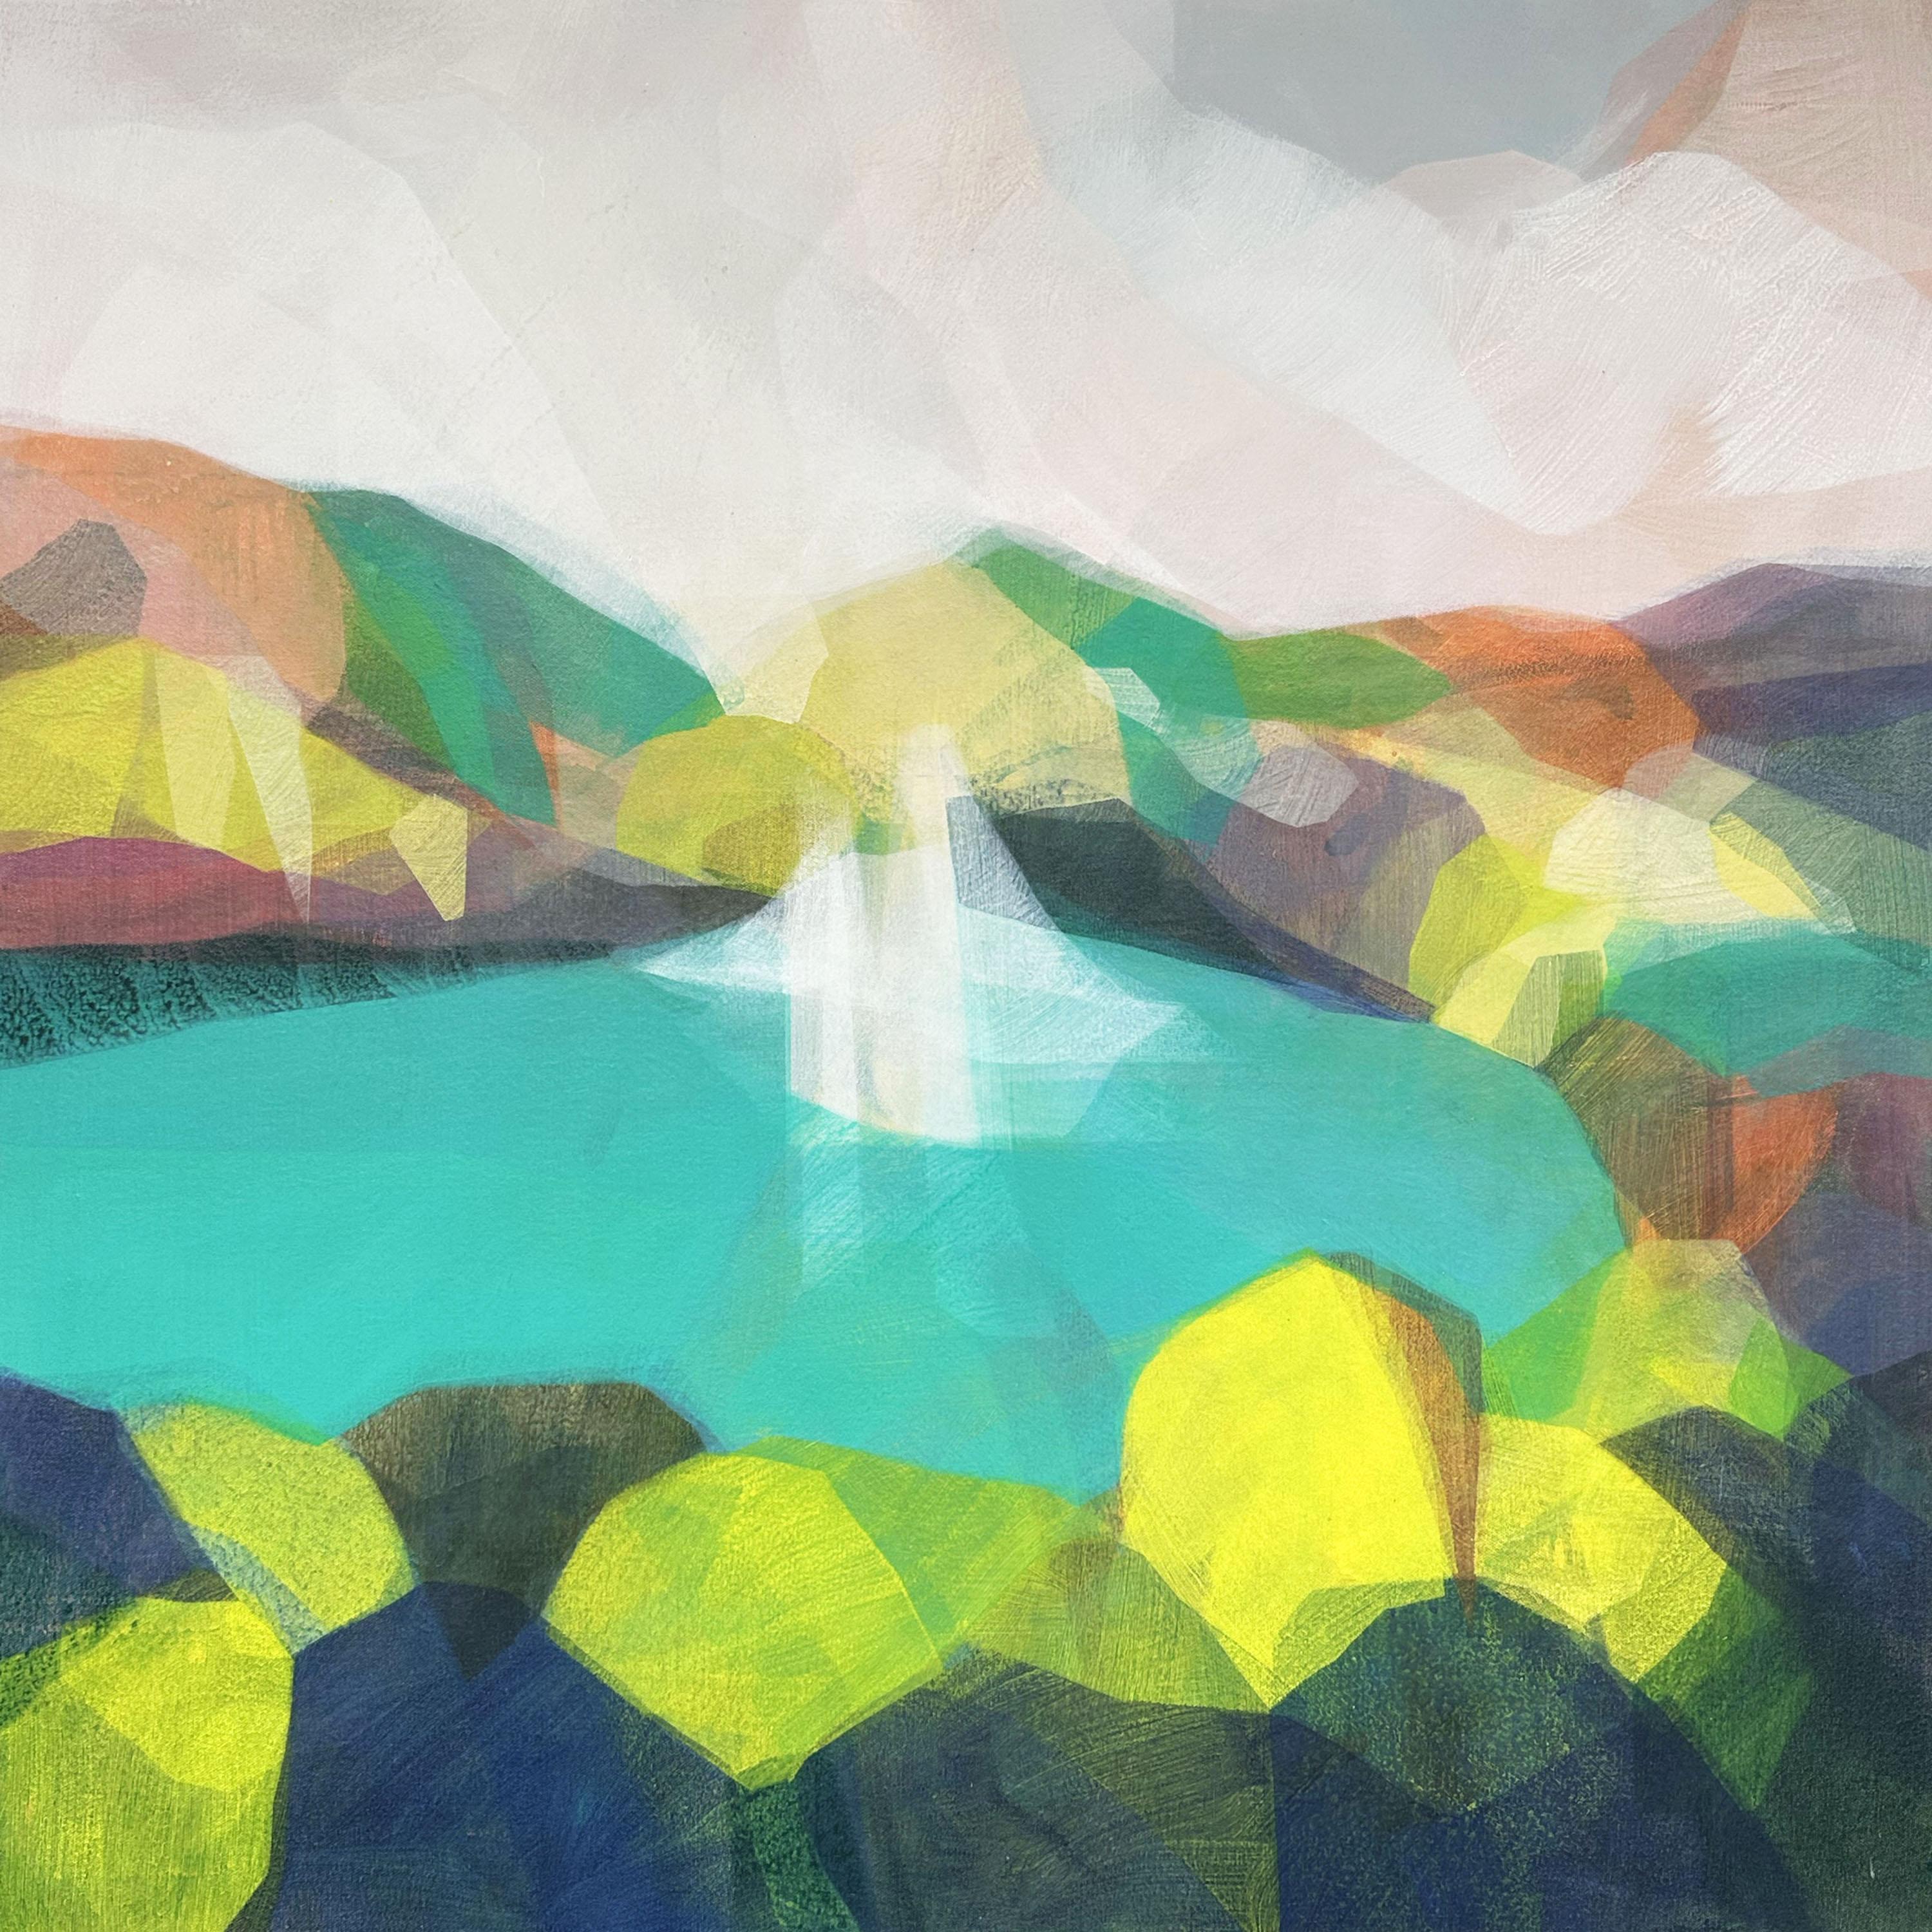 Landscape Painting Katherine Sandoz - « (uhuru) cascade à la route vers hana n° 3 » - paysage abstrait, coloré, eau